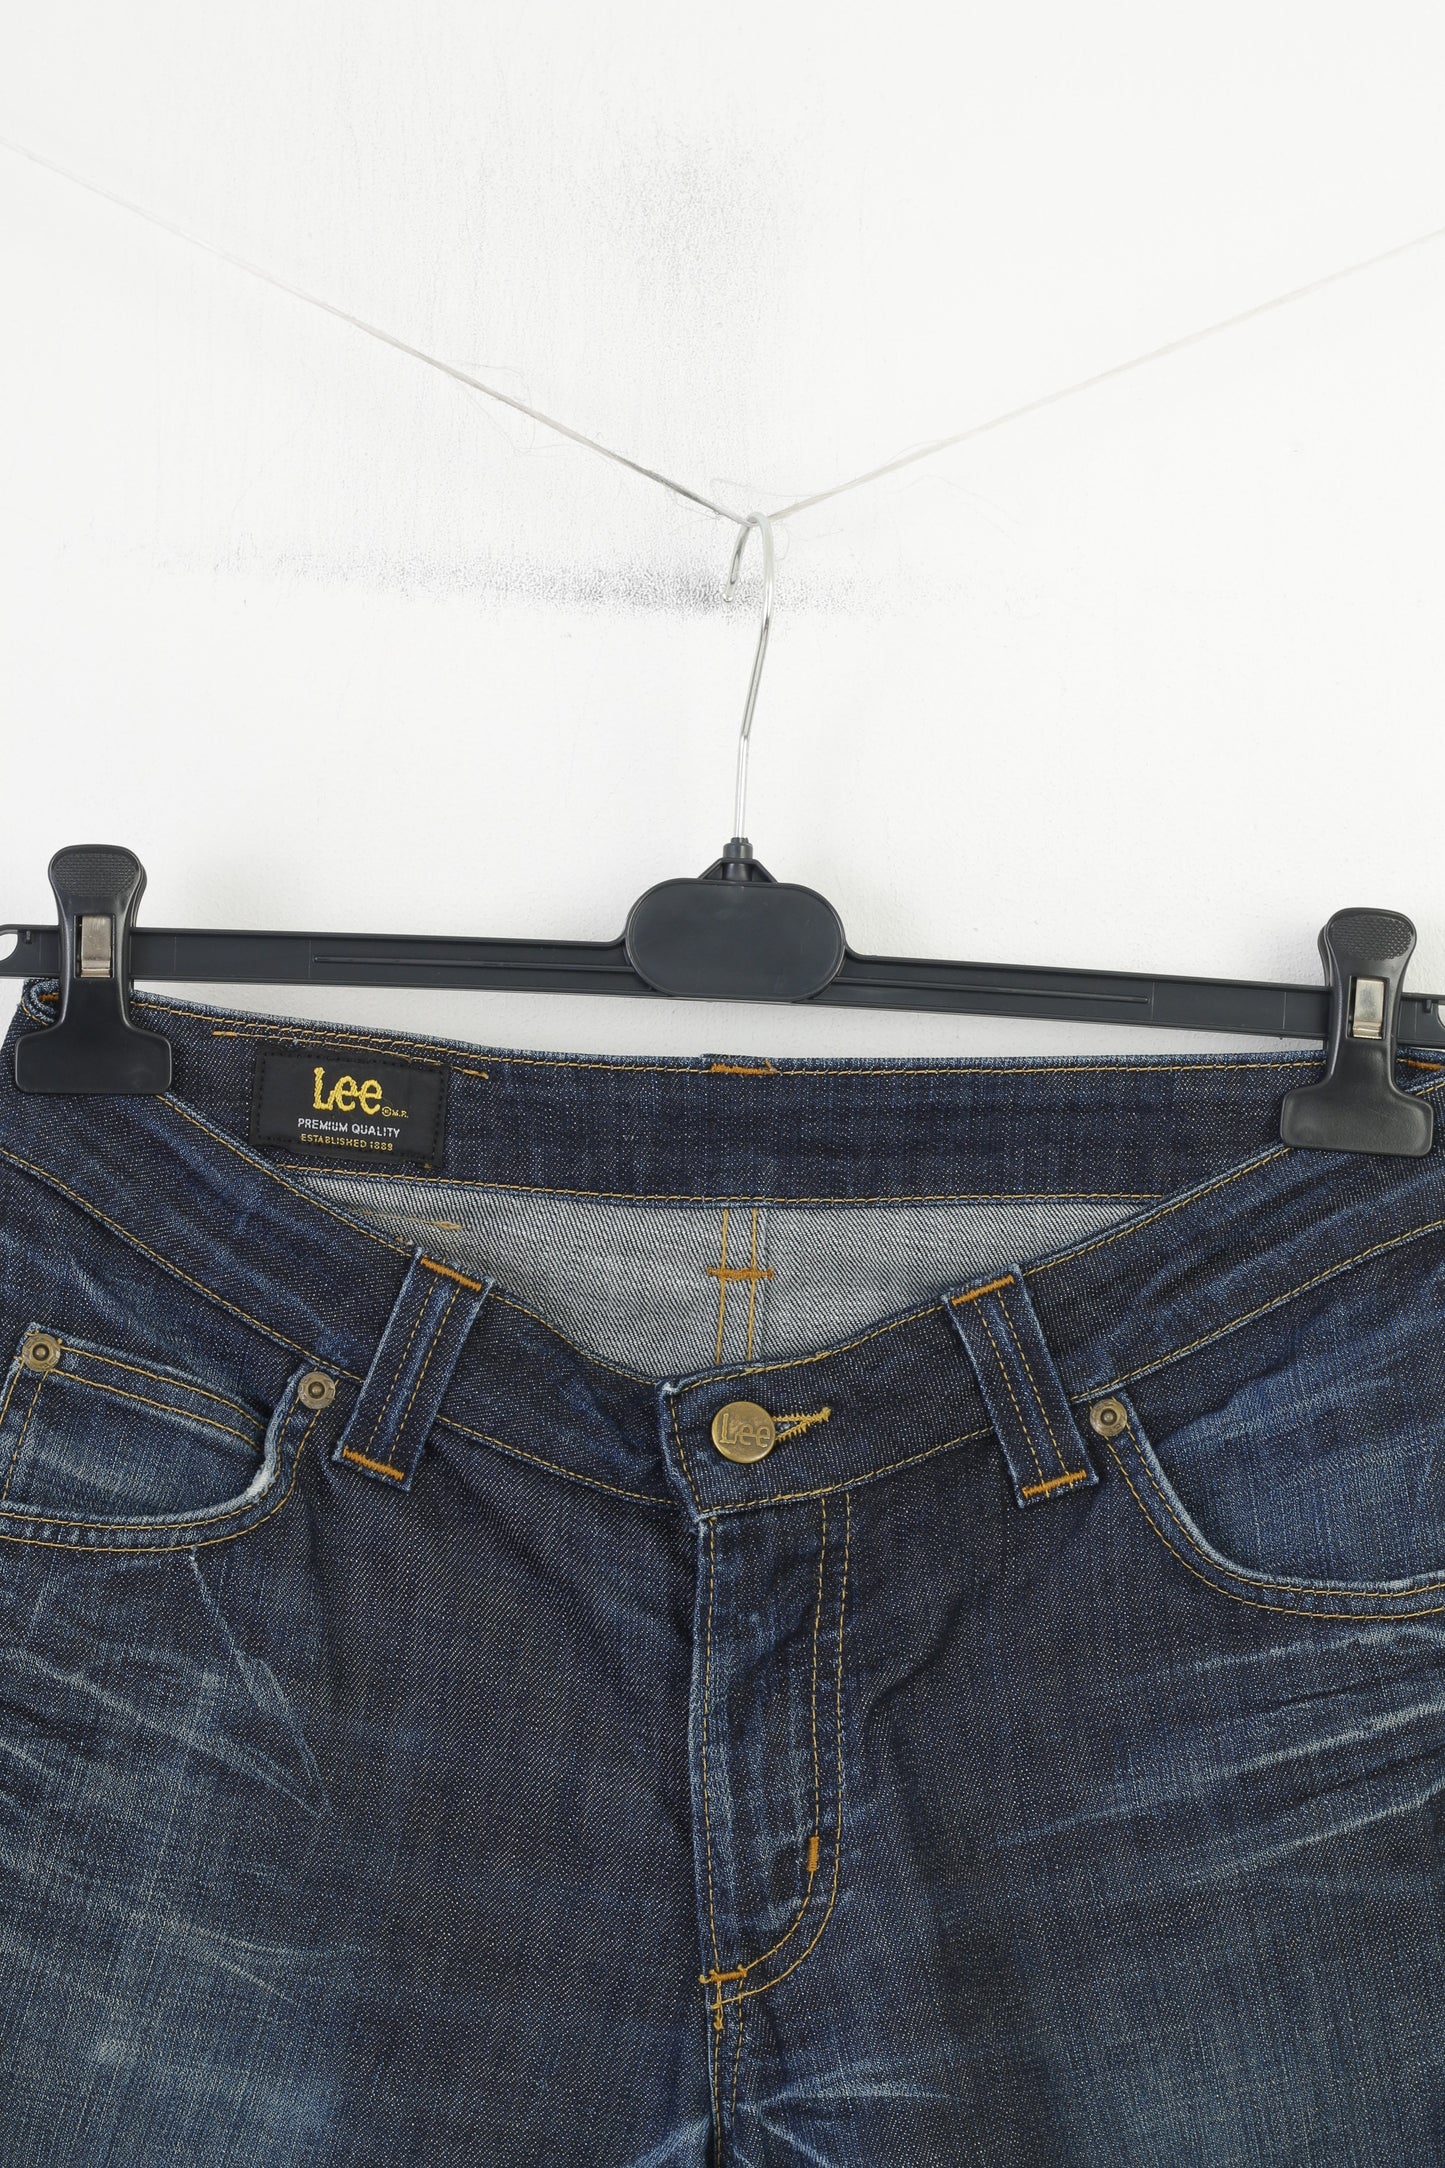 Lee Women 30 Trousers Navy Cotton Jeans Denim Premium Quality Vintage Pants